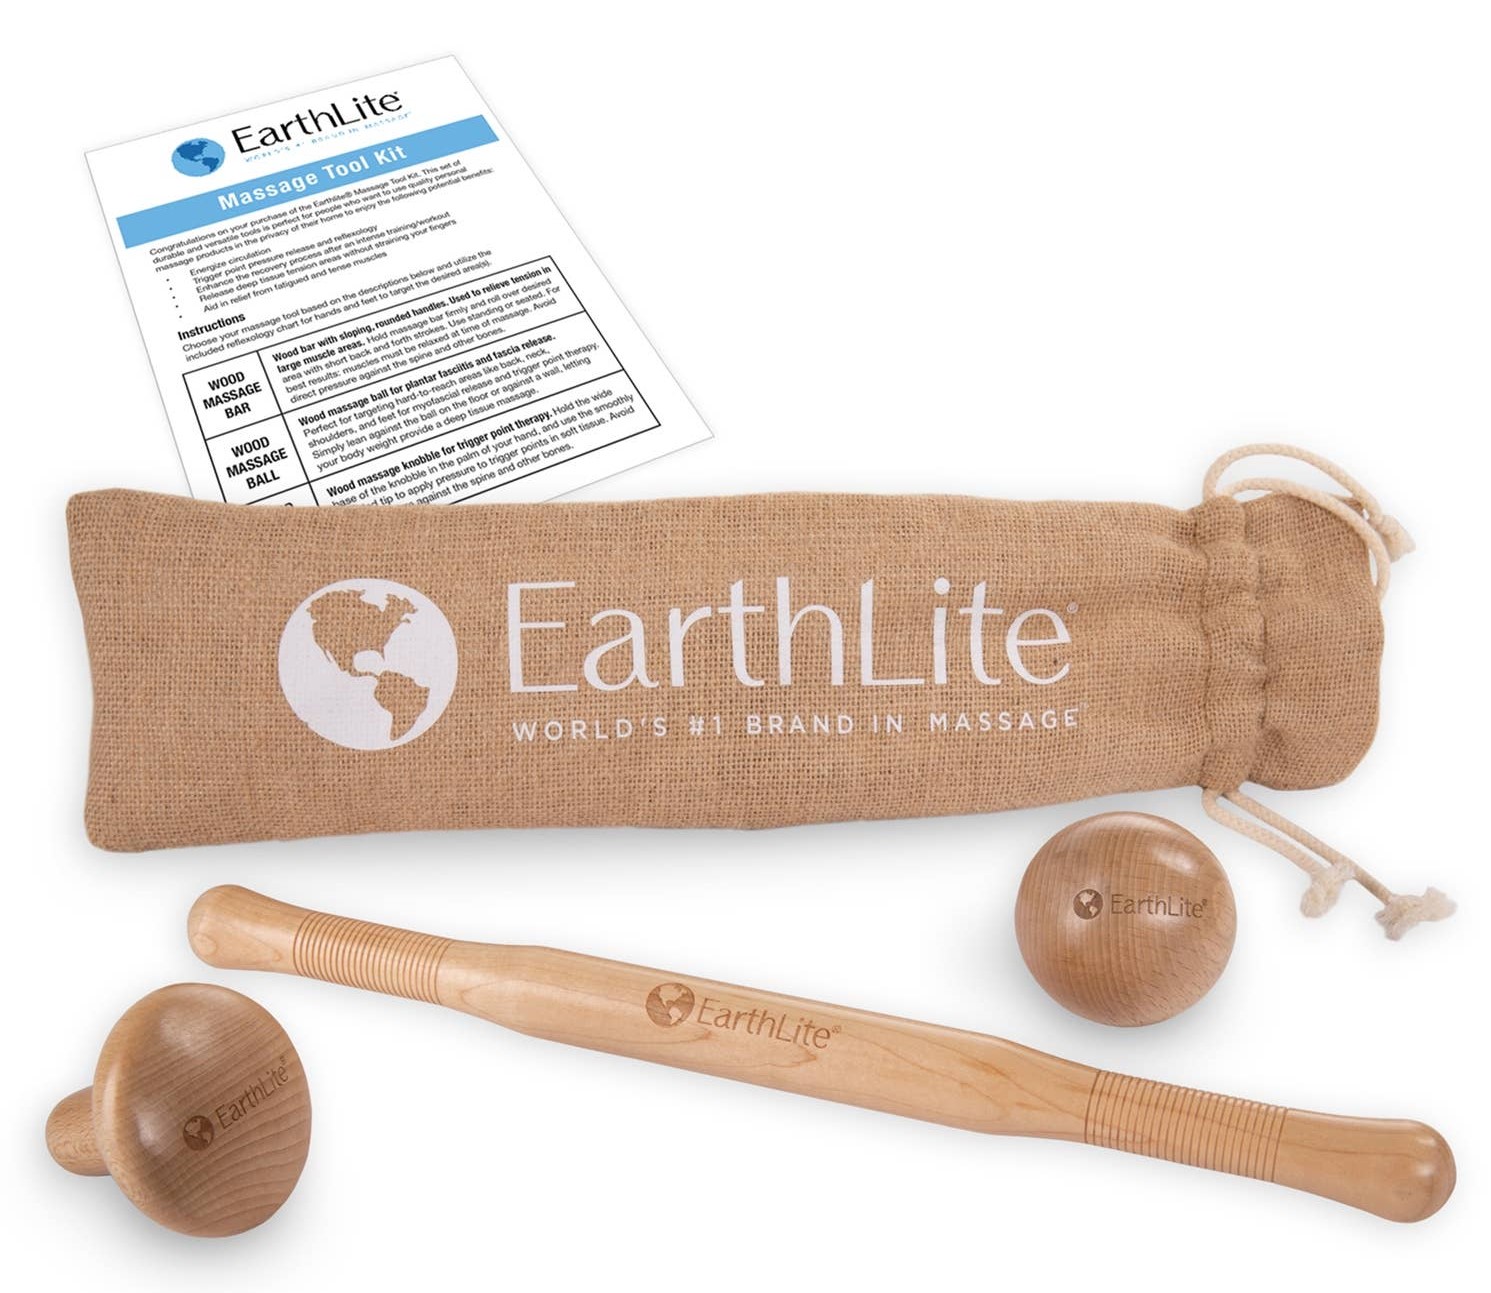 Earthlite Massage Tool Kit